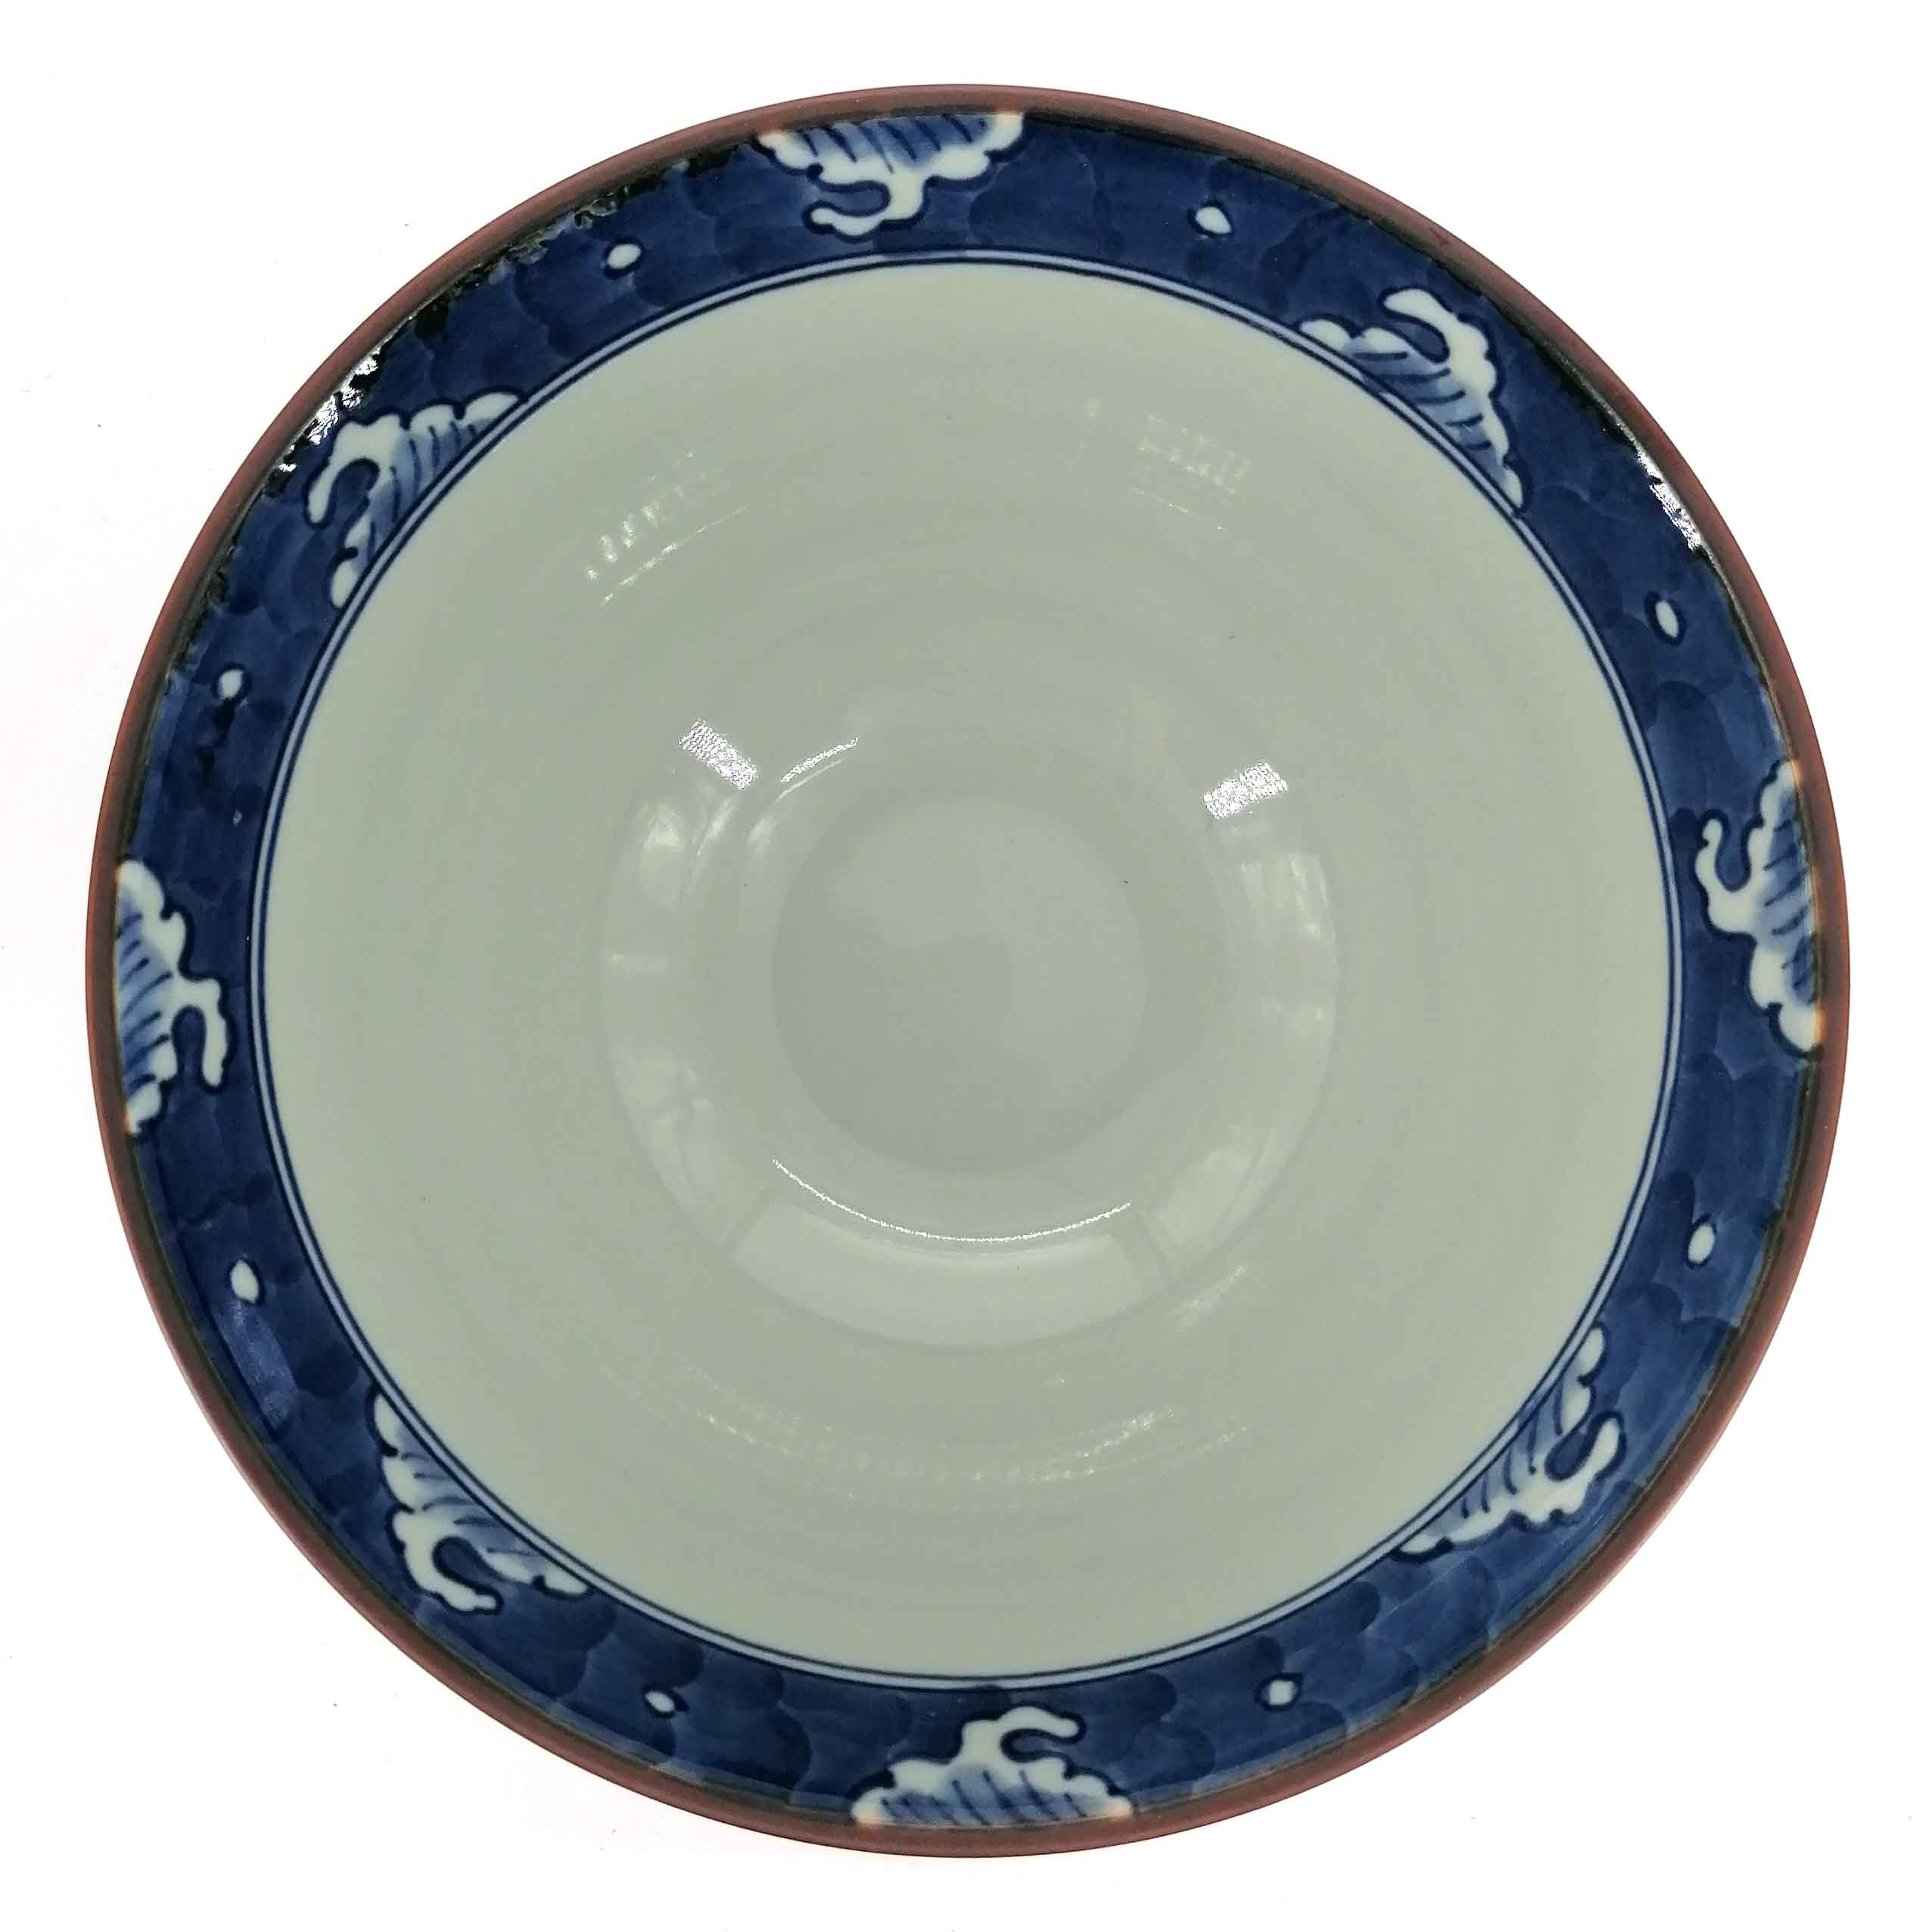 Pequeño cuenco de cerámica japonesa para ramen, azul verdoso oscuro, dibujo  de olas e igeta, NAMIGETA